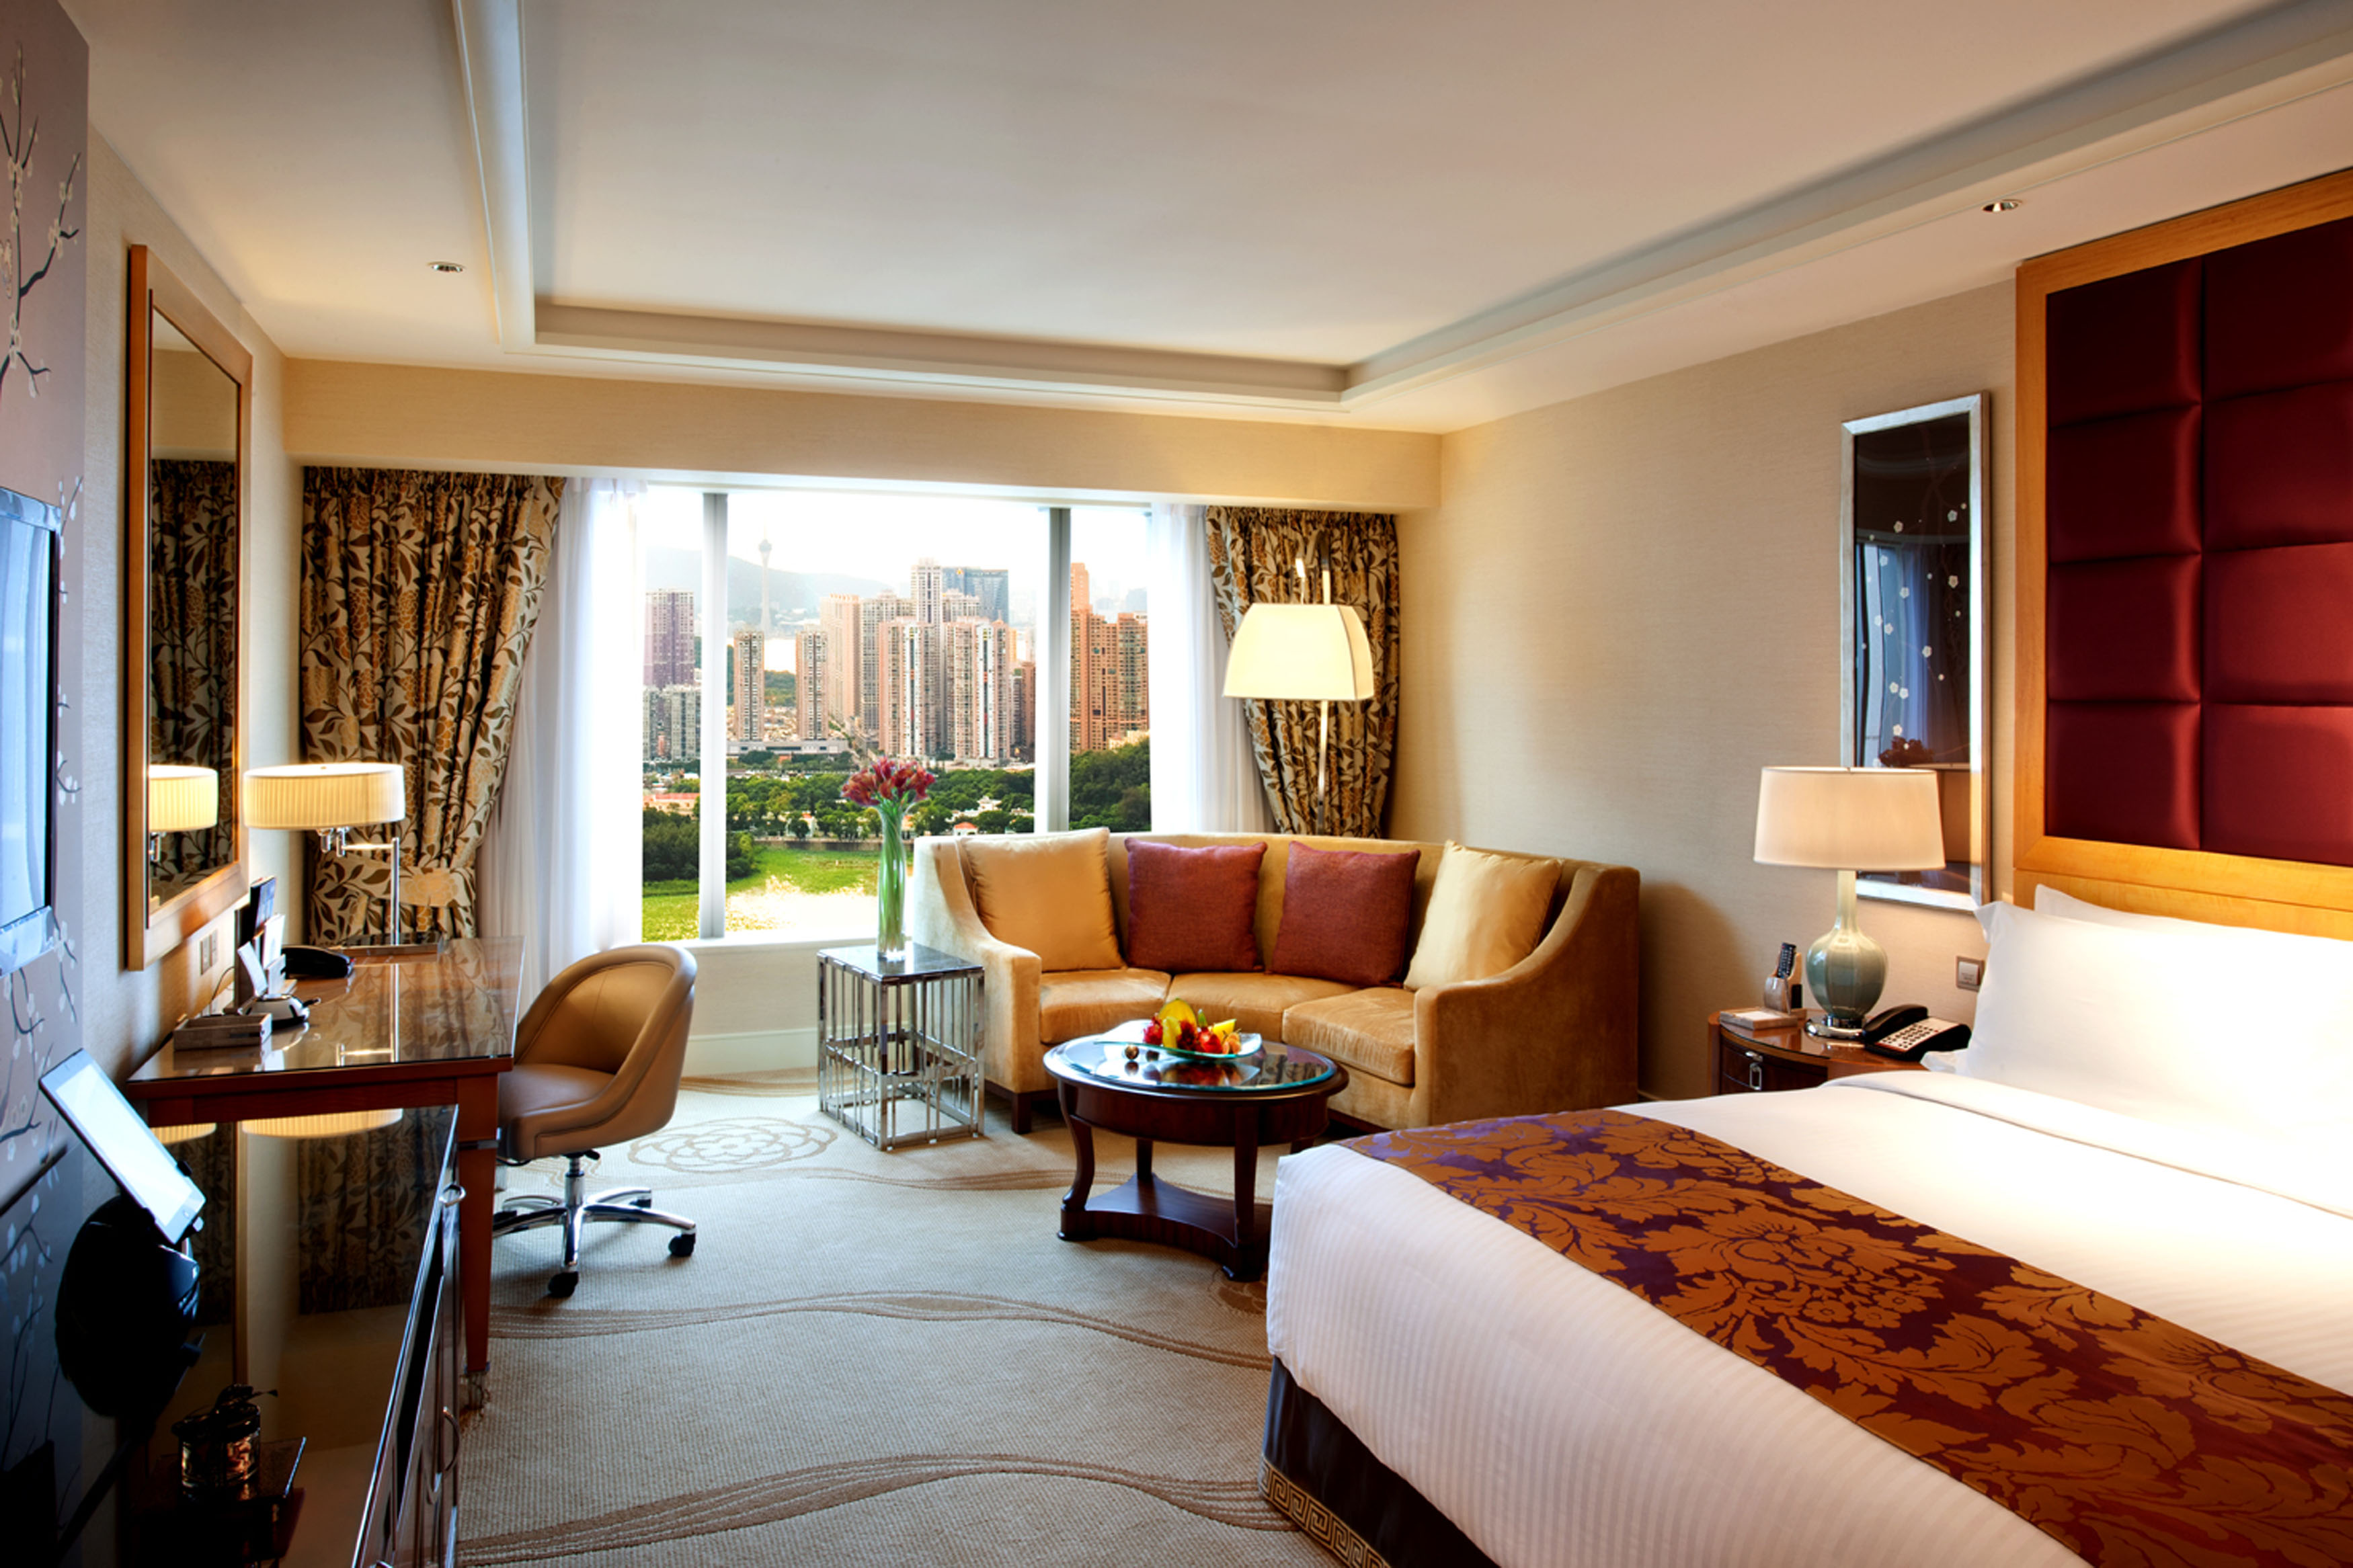 A guest room at Conrad Macao.